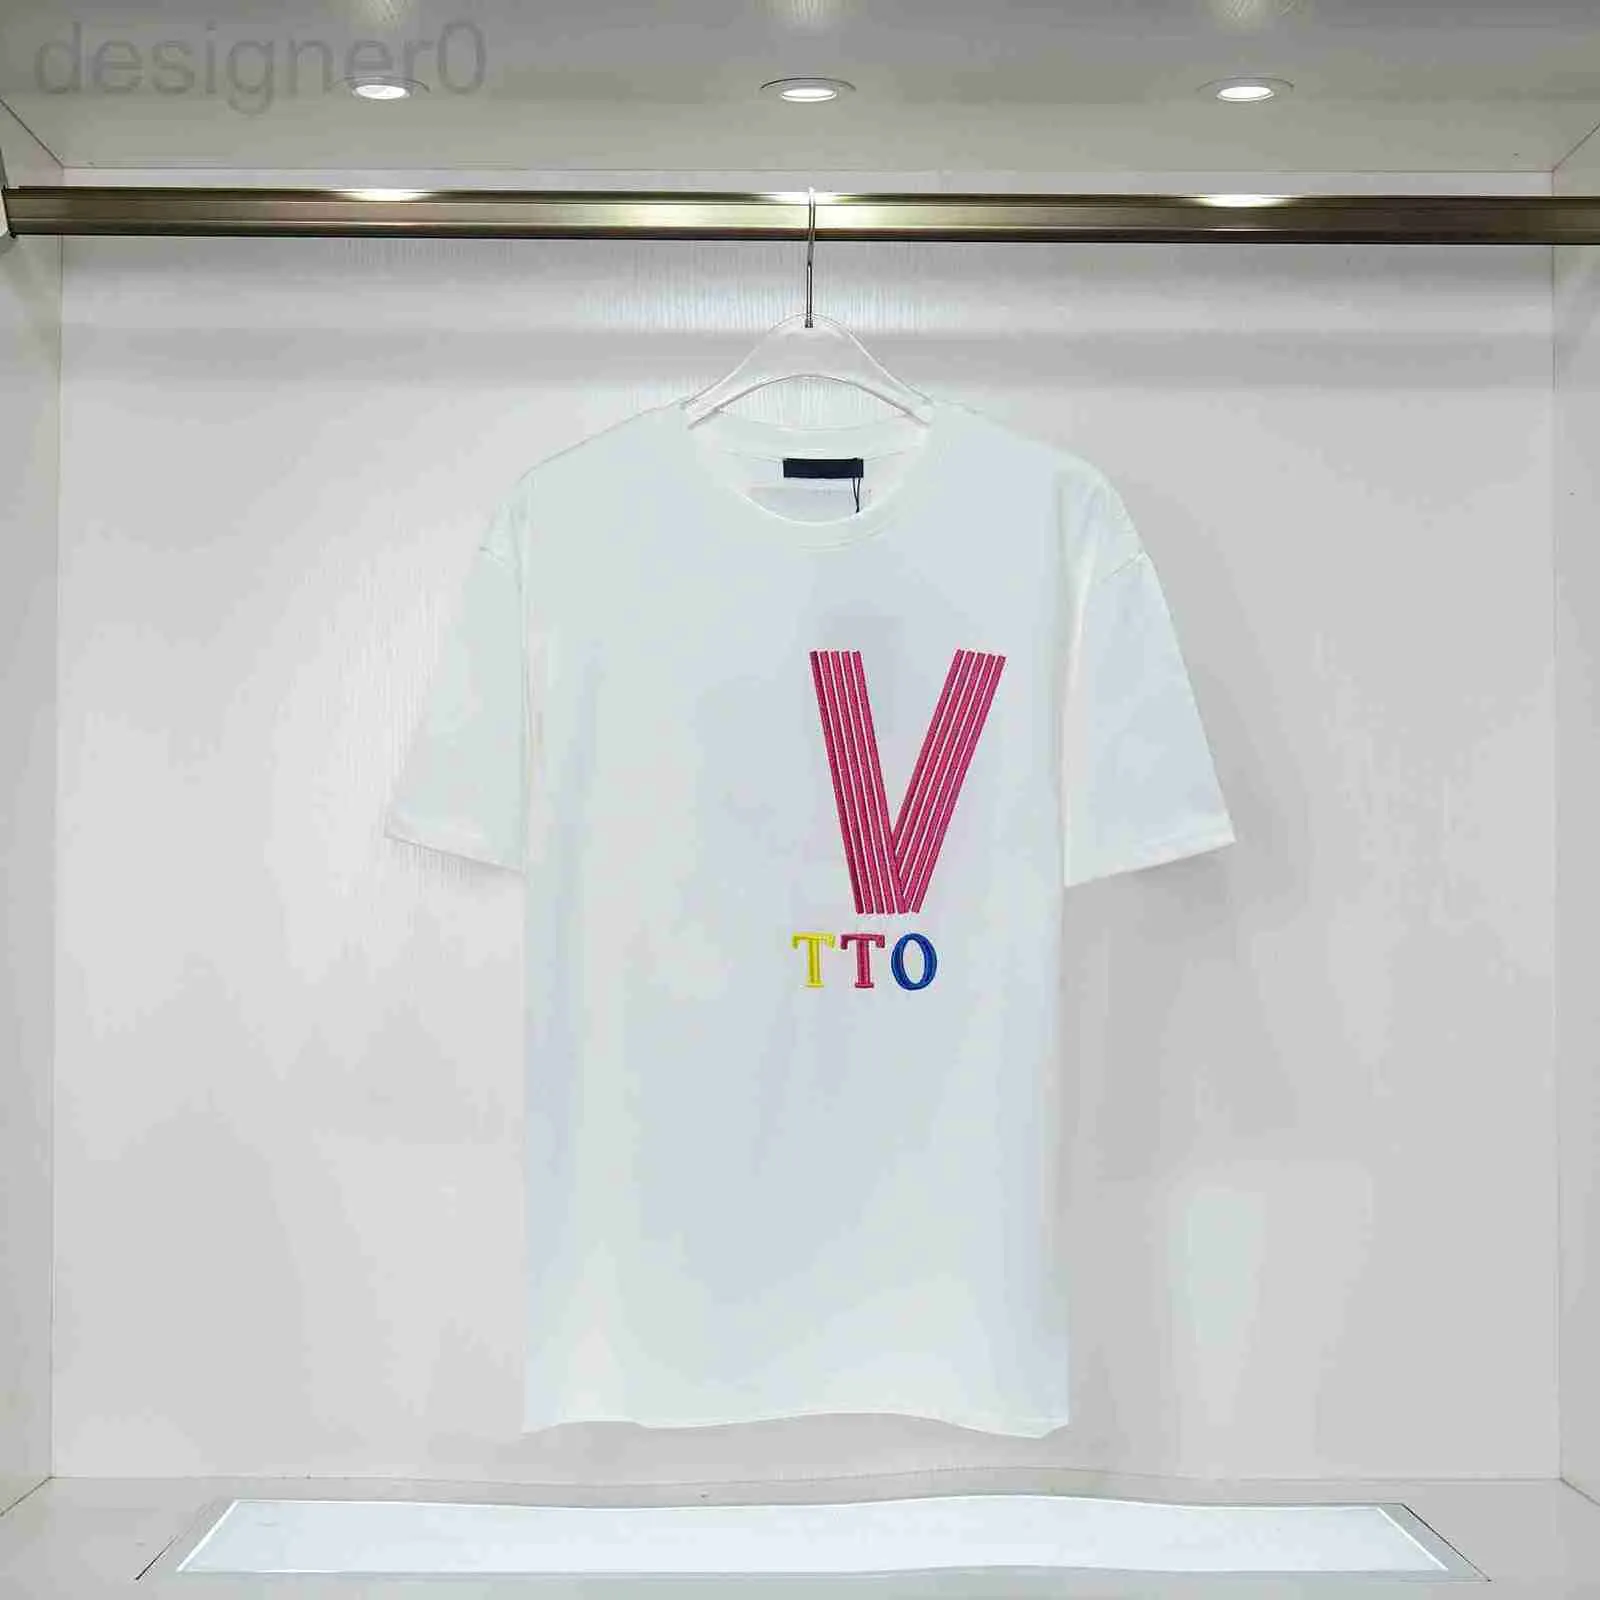 Camisetas de hombre Camisetas de diseñador de lujo populares Verano para hombre para mujer Manga corta Camiseta de moda Camisas de algodón puro de alta calidad Ocio Patrón clásico Tamaño S-XXL 11YS